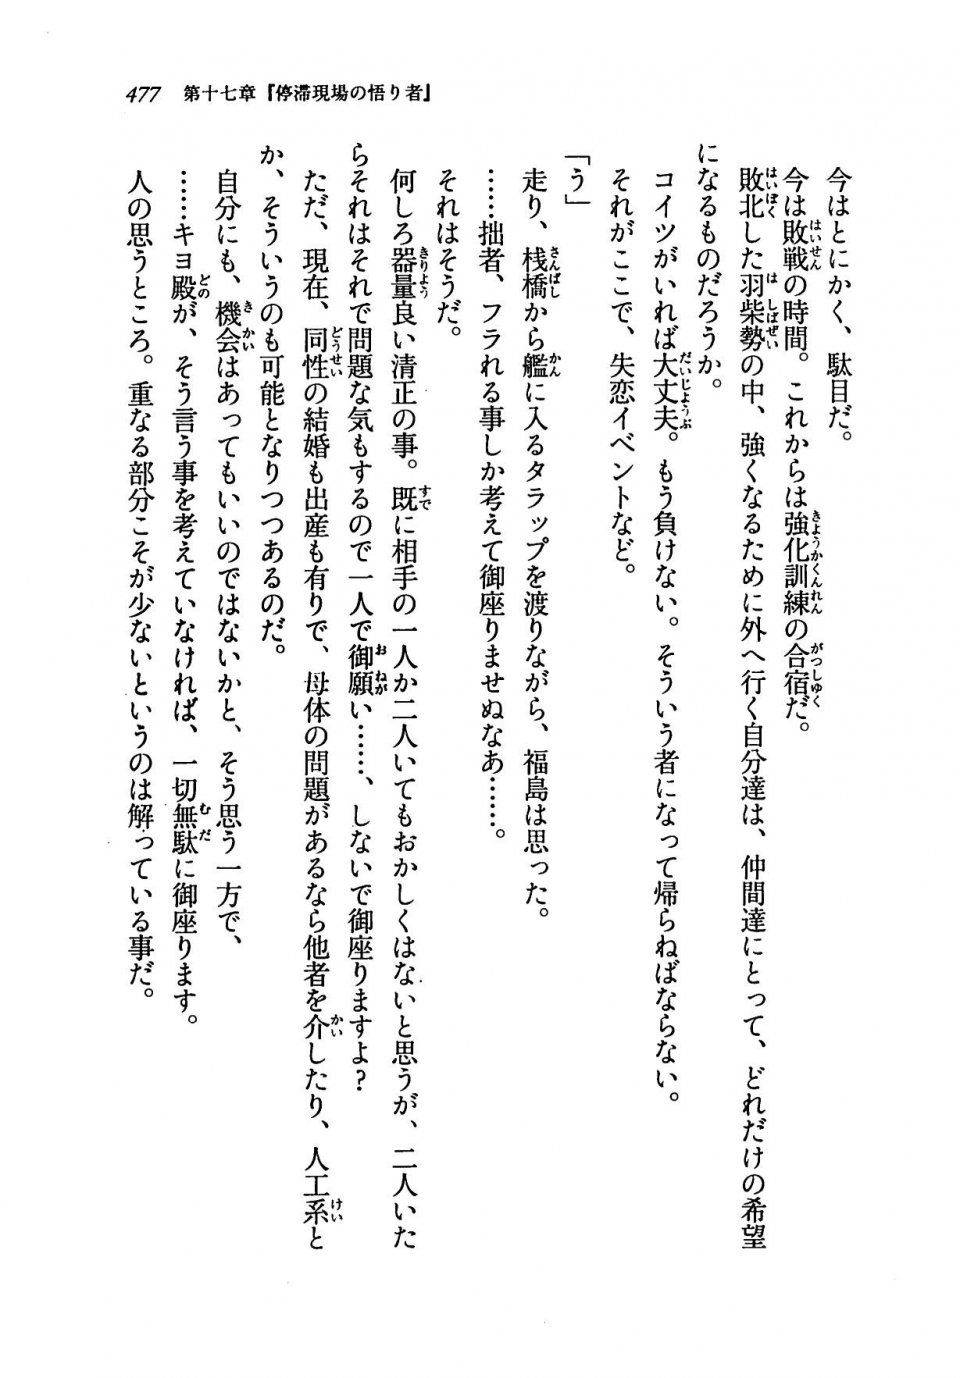 Kyoukai Senjou no Horizon LN Vol 19(8A) - Photo #477